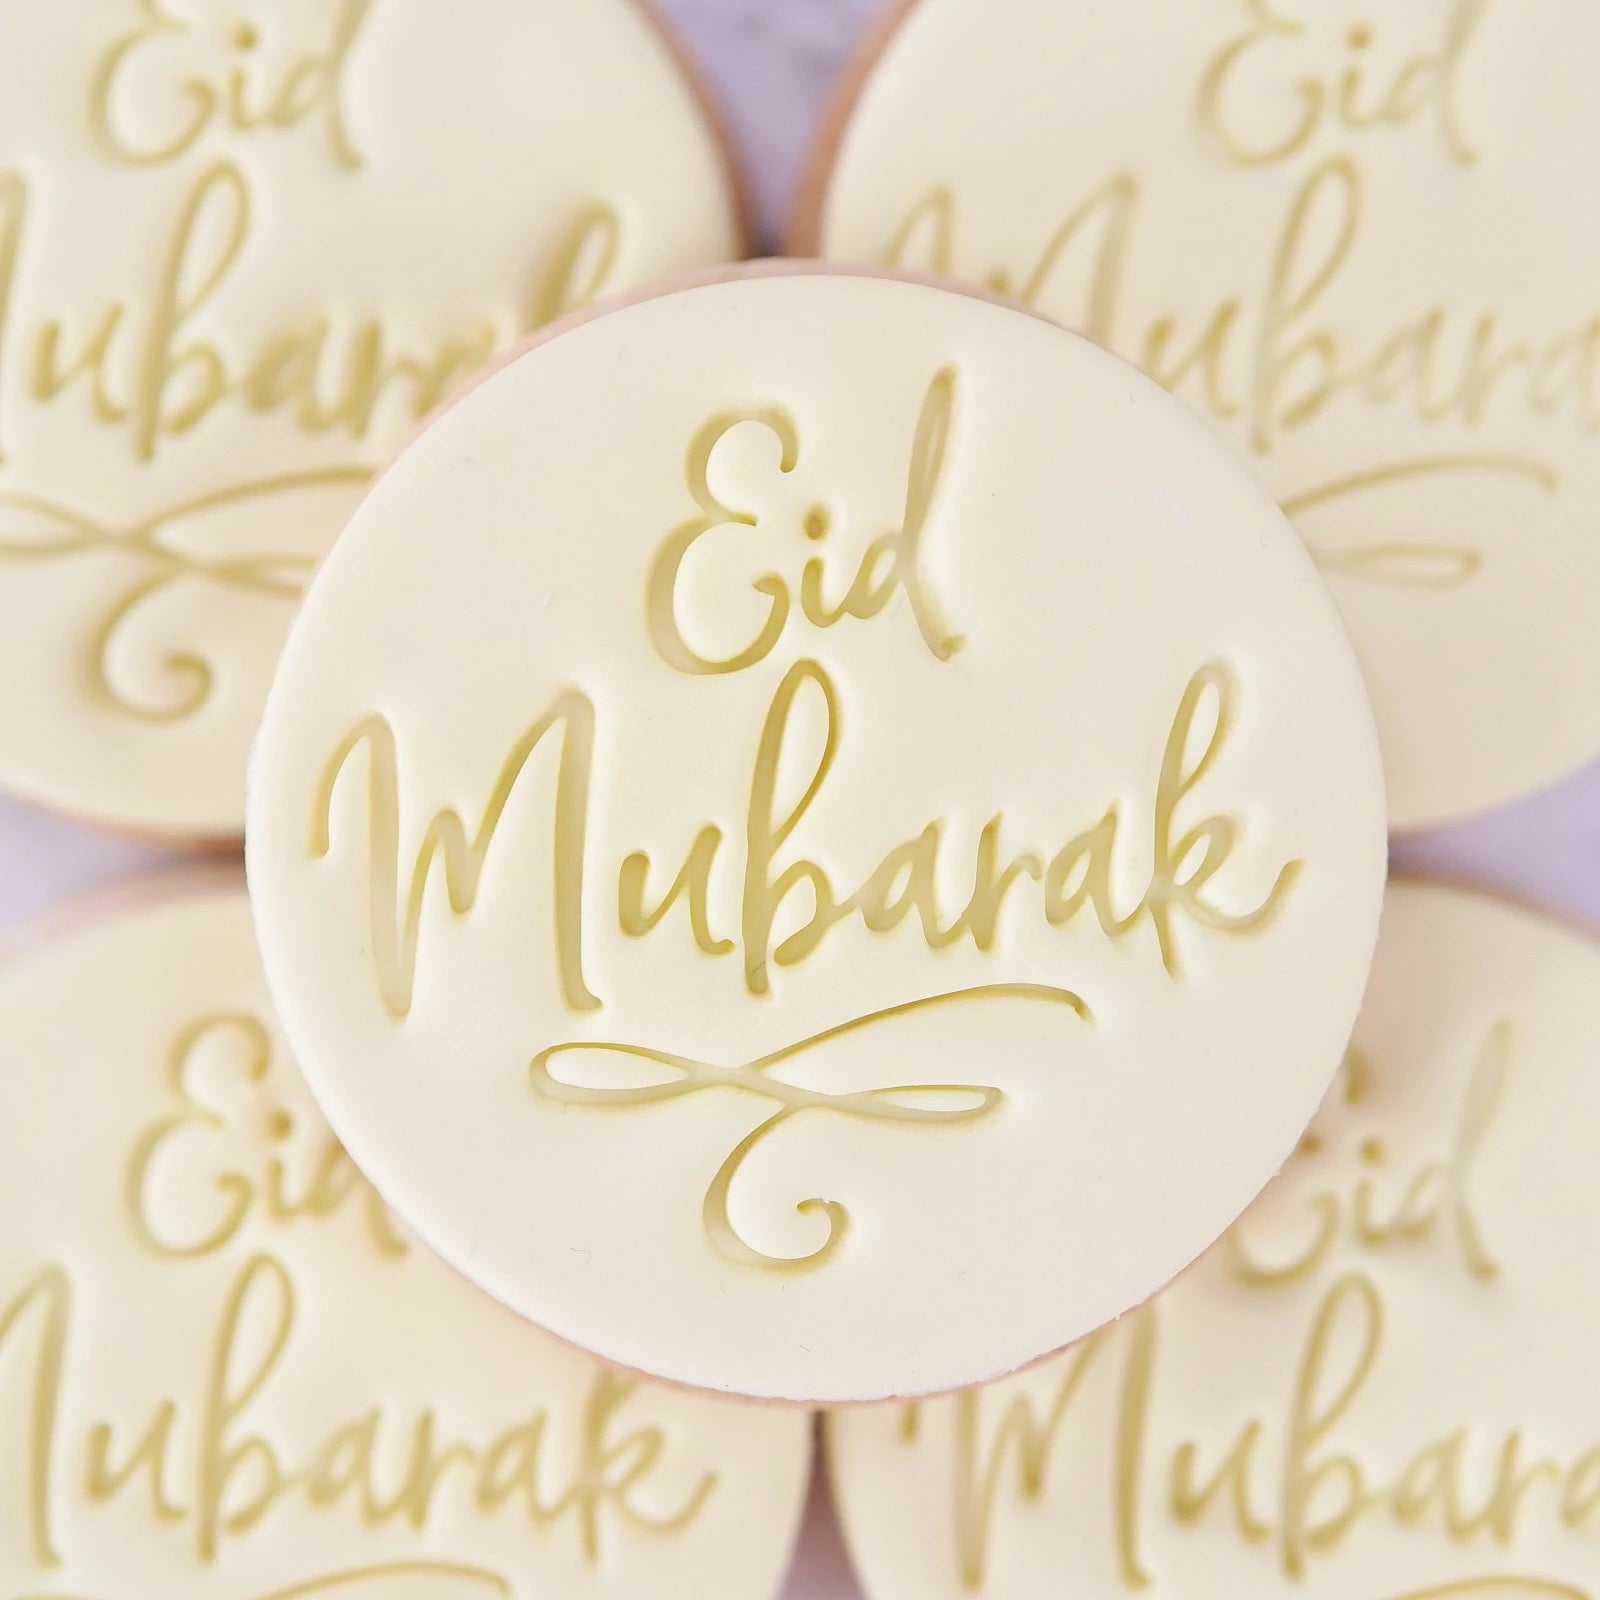 Sweet Stamp Cookie / Cupcake Embosser Press - Eid Mubarak - Kate's Cupboard